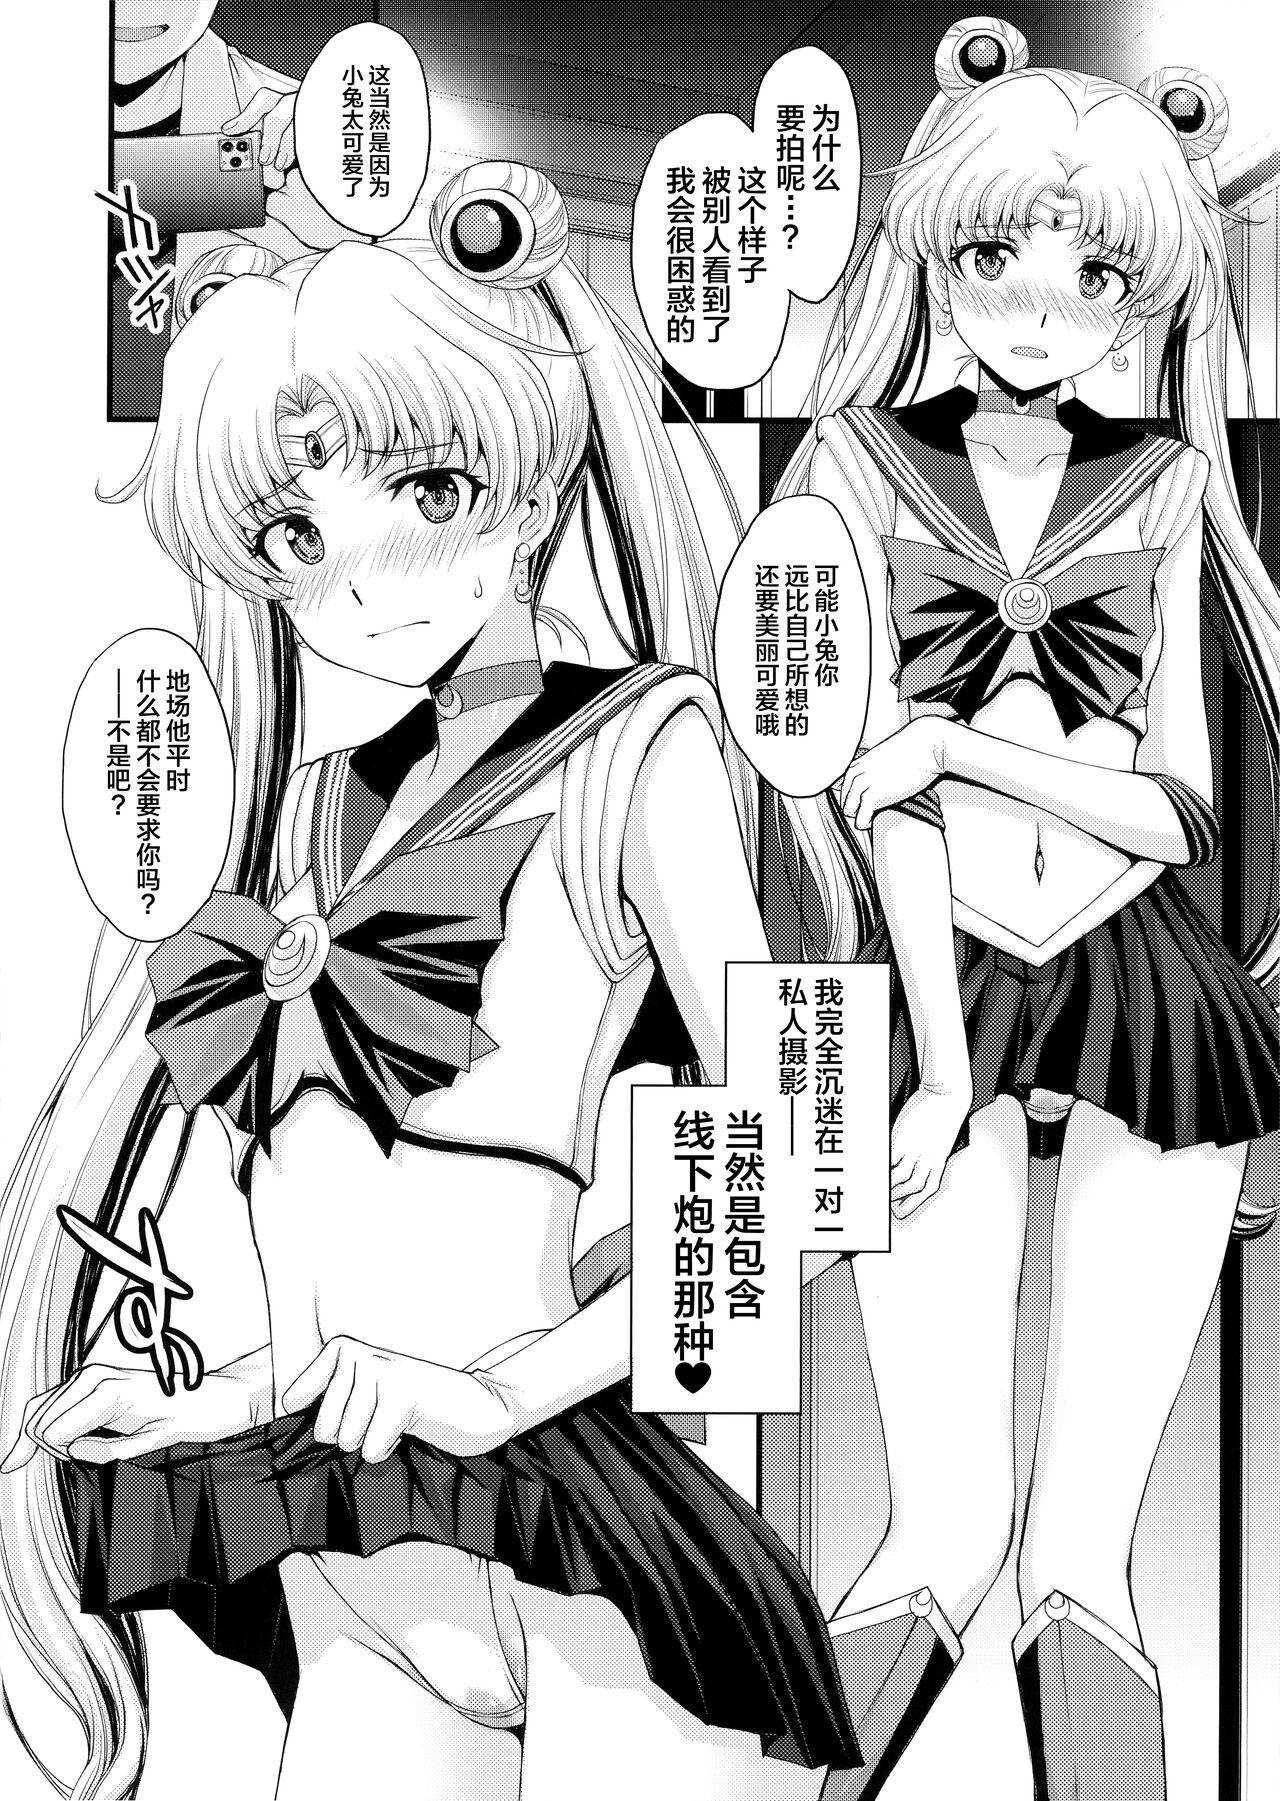 1080p Usagi no Junjou!? Chin Make Bishoujo Senshi! - Sailor moon | bishoujo senshi sailor moon Long Hair - Page 7